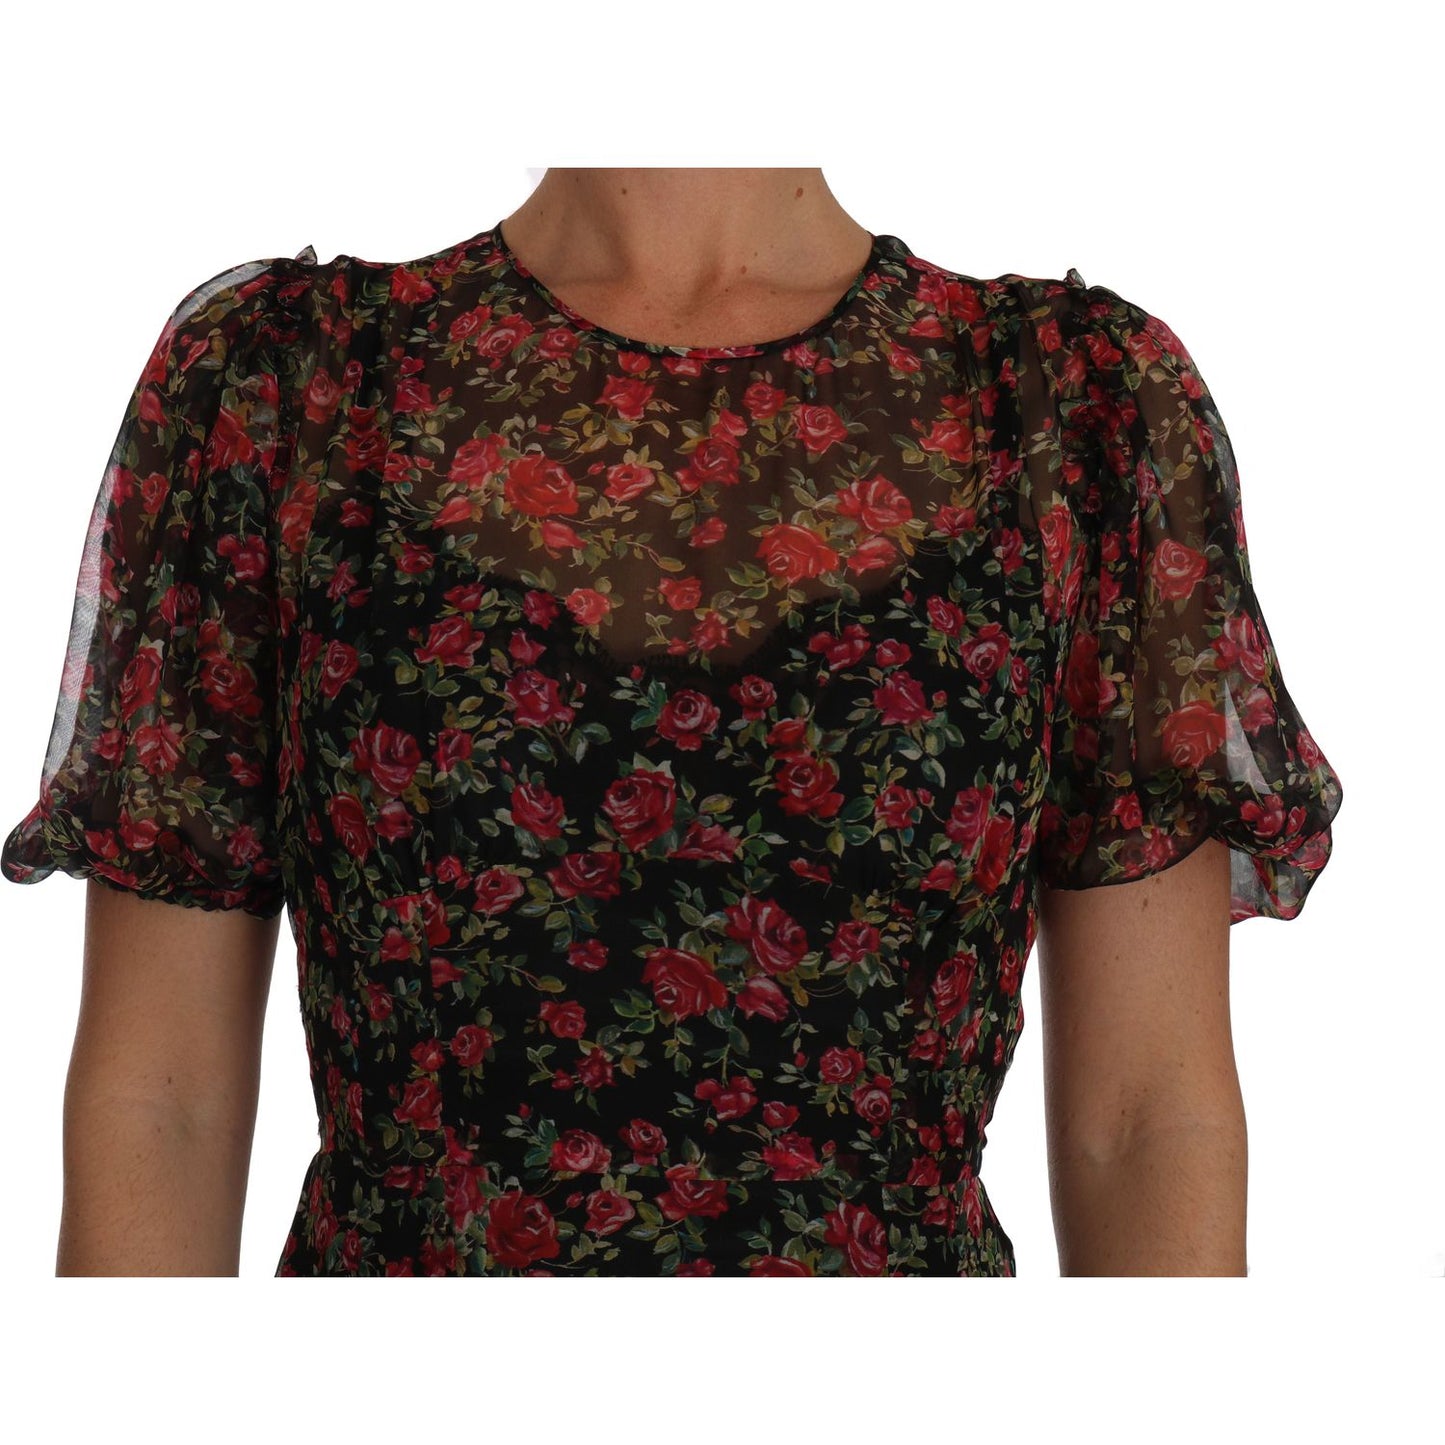 Dolce & Gabbana Elegant Floral A-Line Silk Dress black-floral-roses-a-line-shift-gown IMG_4349.jpg